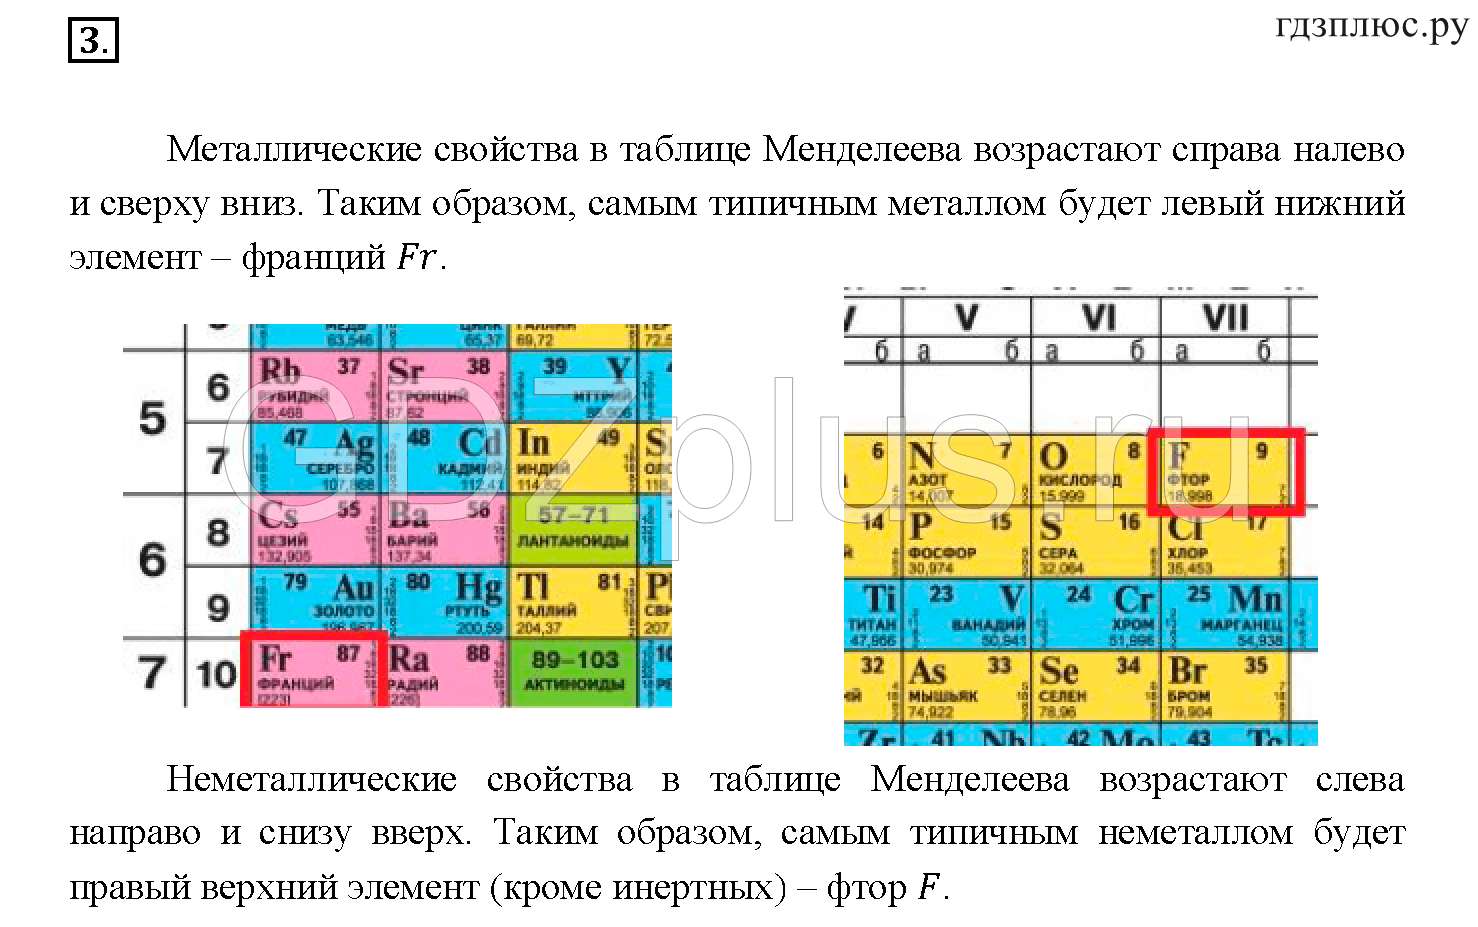 У кого металлические свойства сильнее. Усиление основных свойств в таблице Менделеева. Таблица металлических свойств химических элементов. Порядок металлических свойств элементов. Металлические свойства элементов таблица.